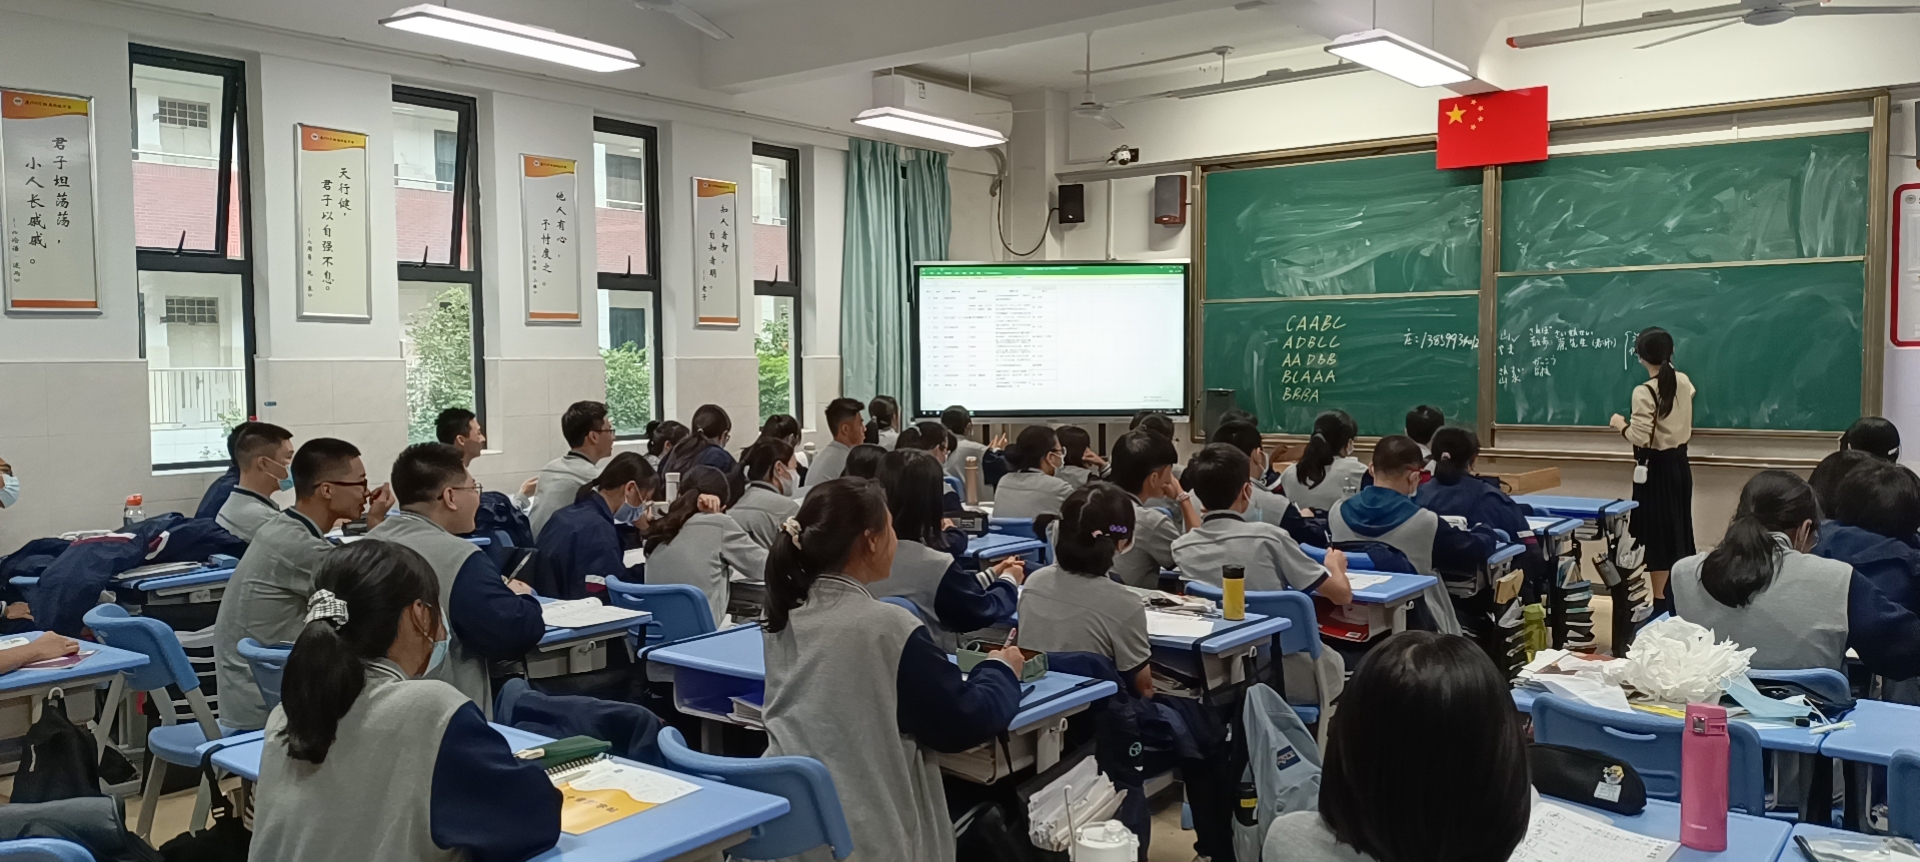 科技翔安日语课堂